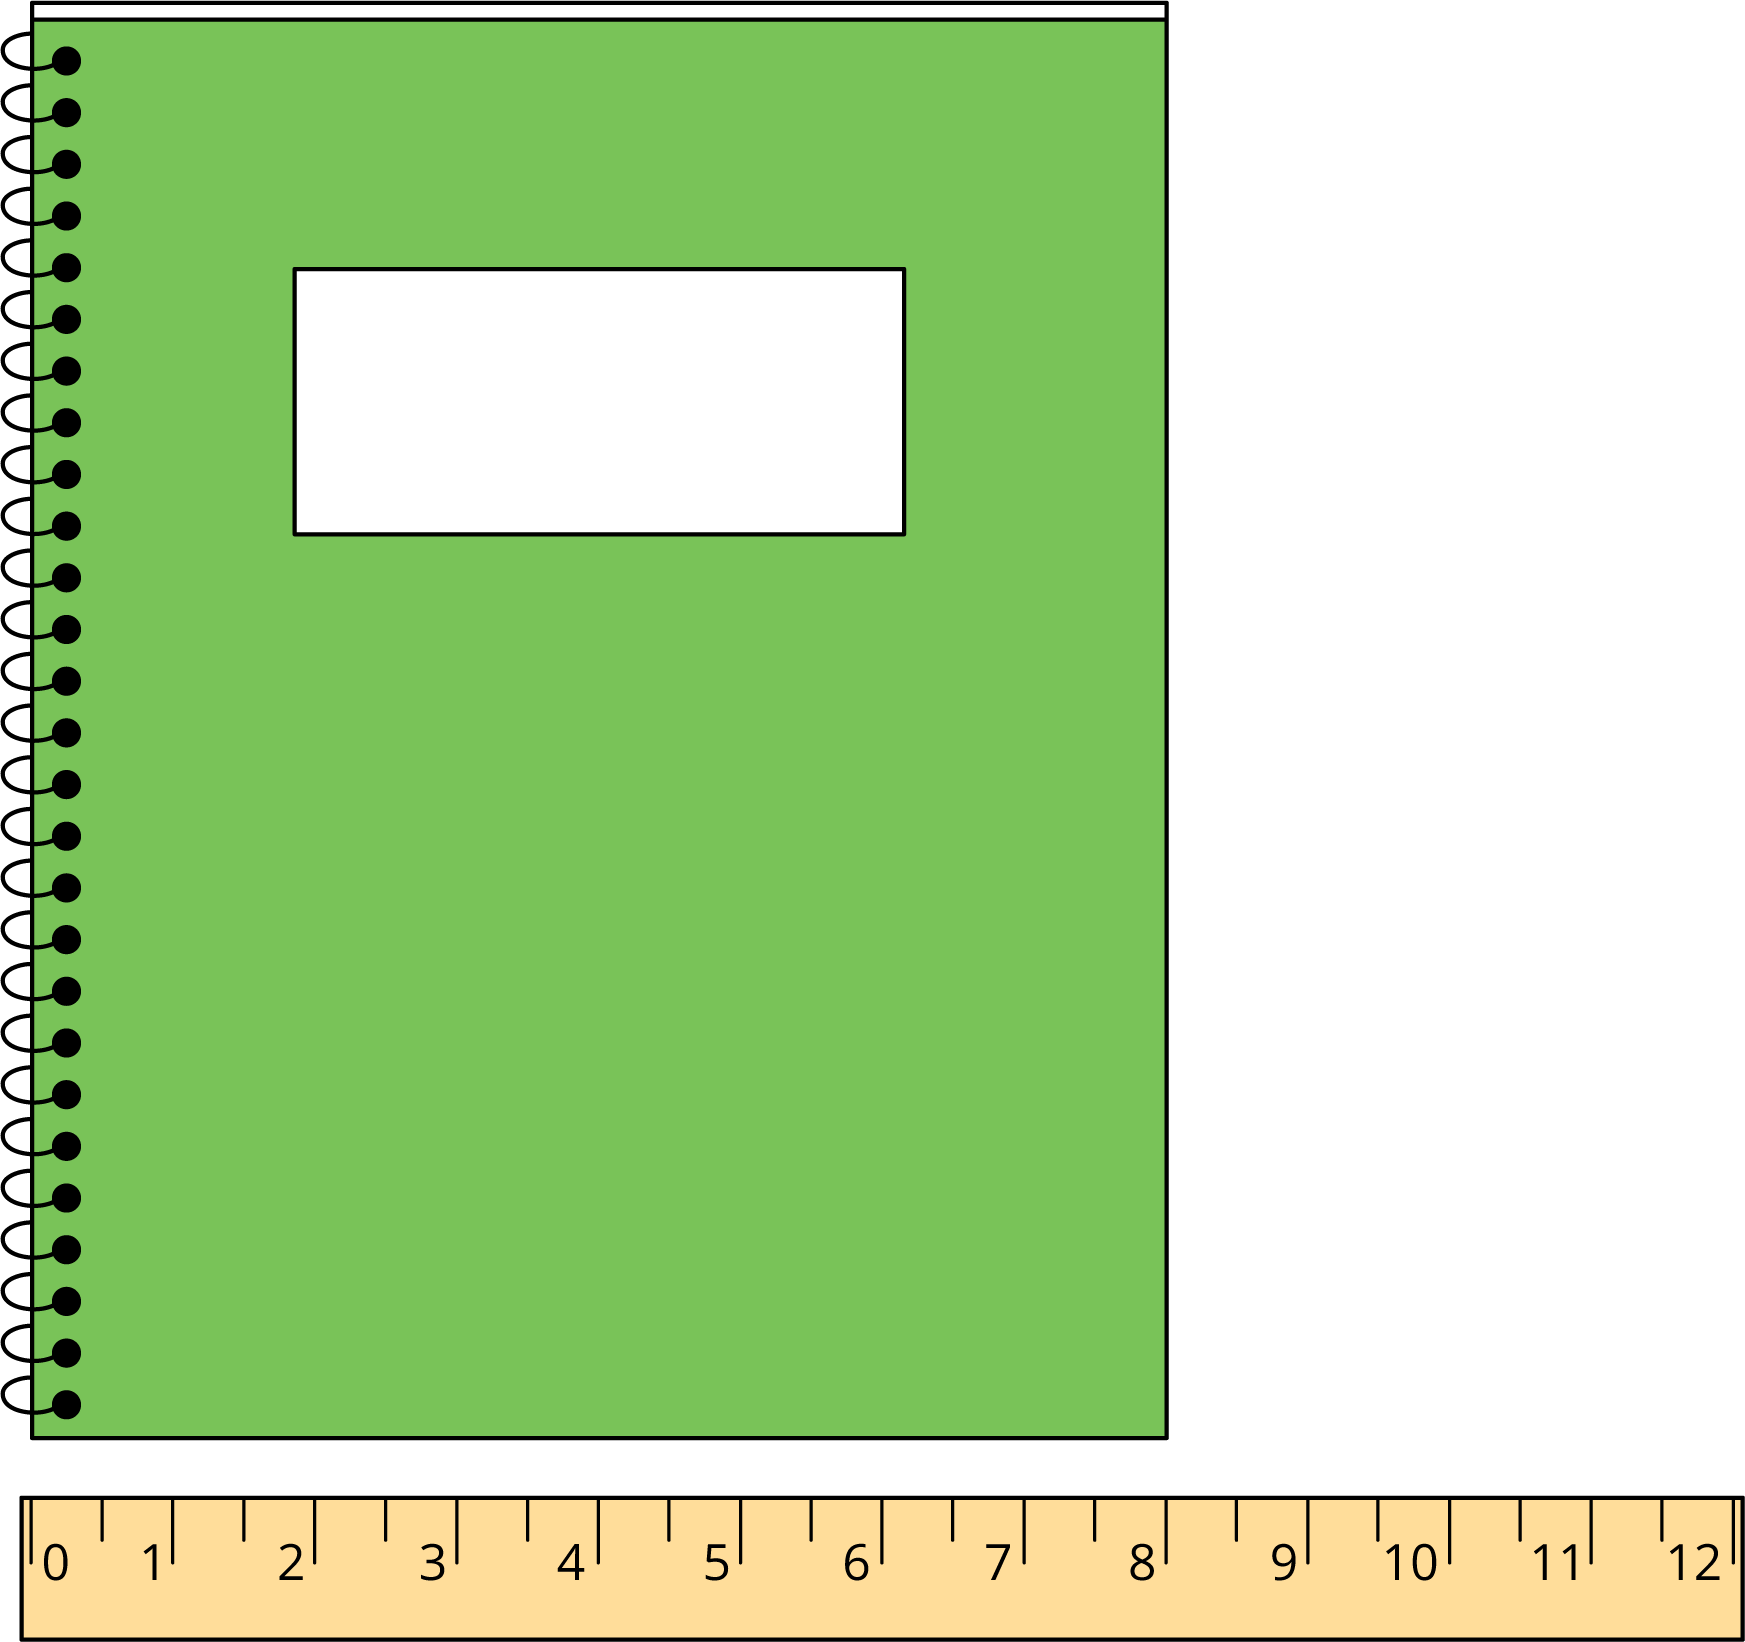 Una regla marcada con números del 0 al 12. Con la regla se mide el lado corto de un cuaderno. El lado corto del cuaderno comienza en 0 y termina en 8.